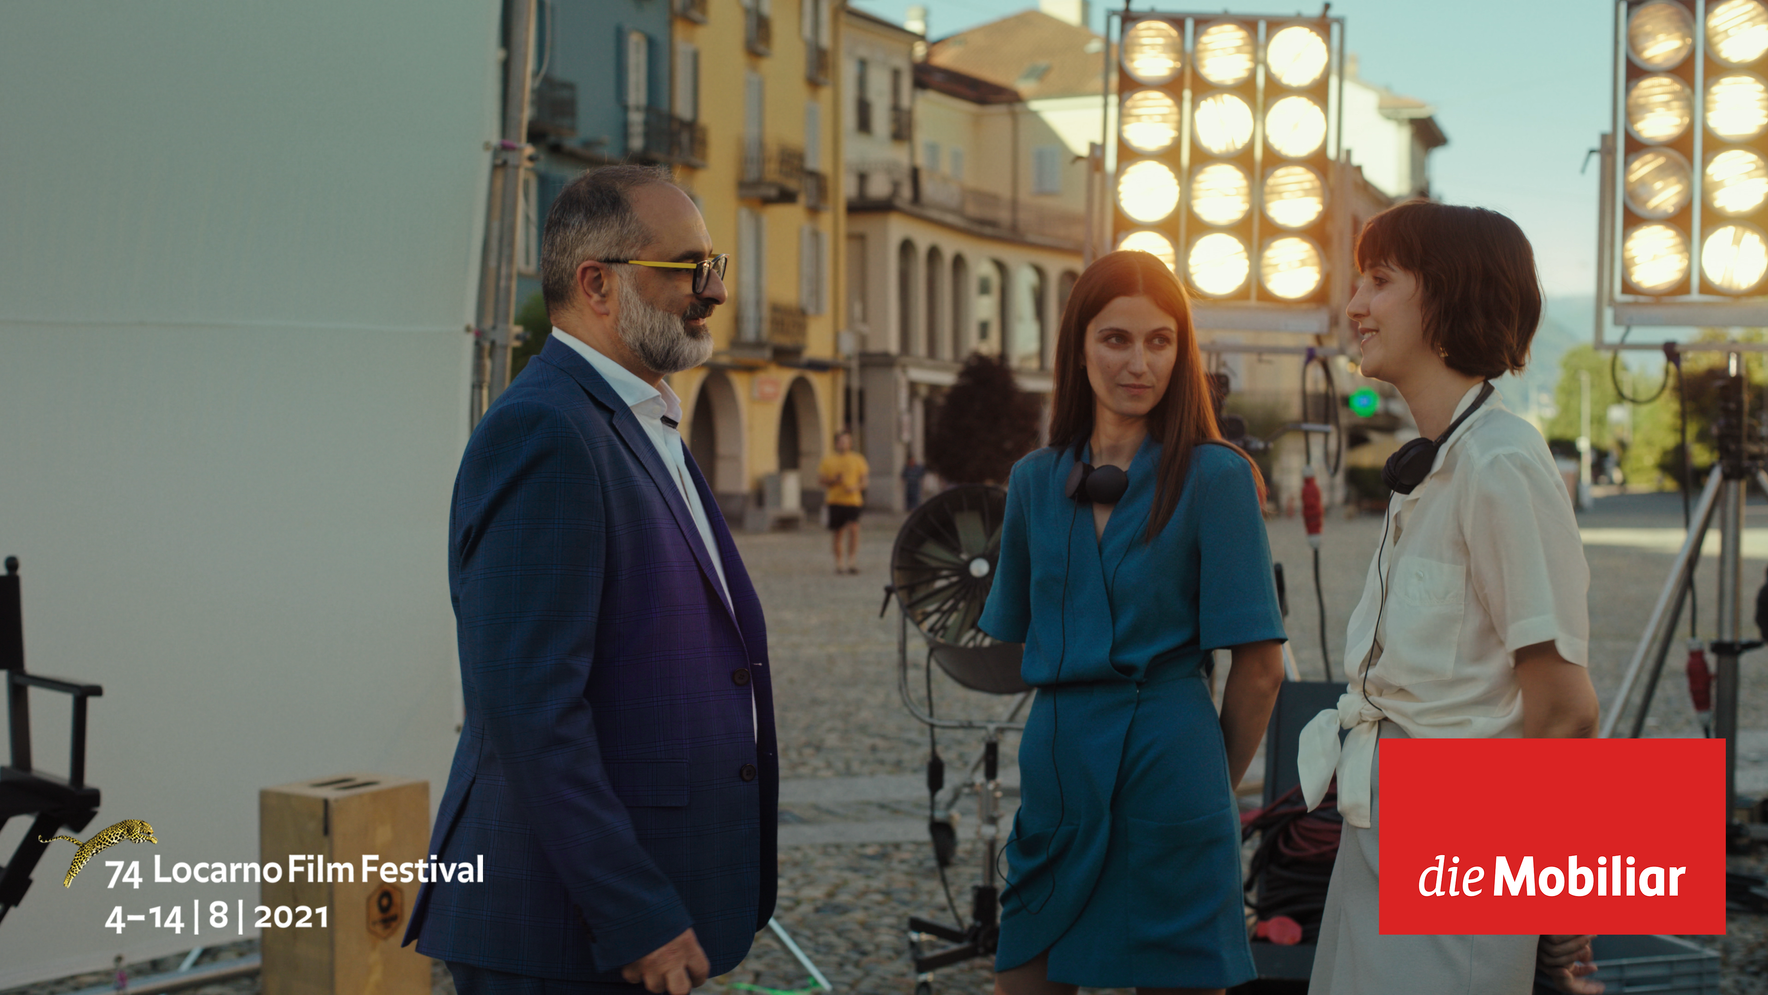 Come Together La Mobiliare - Piazza Grande Spot Locarno Film Festival